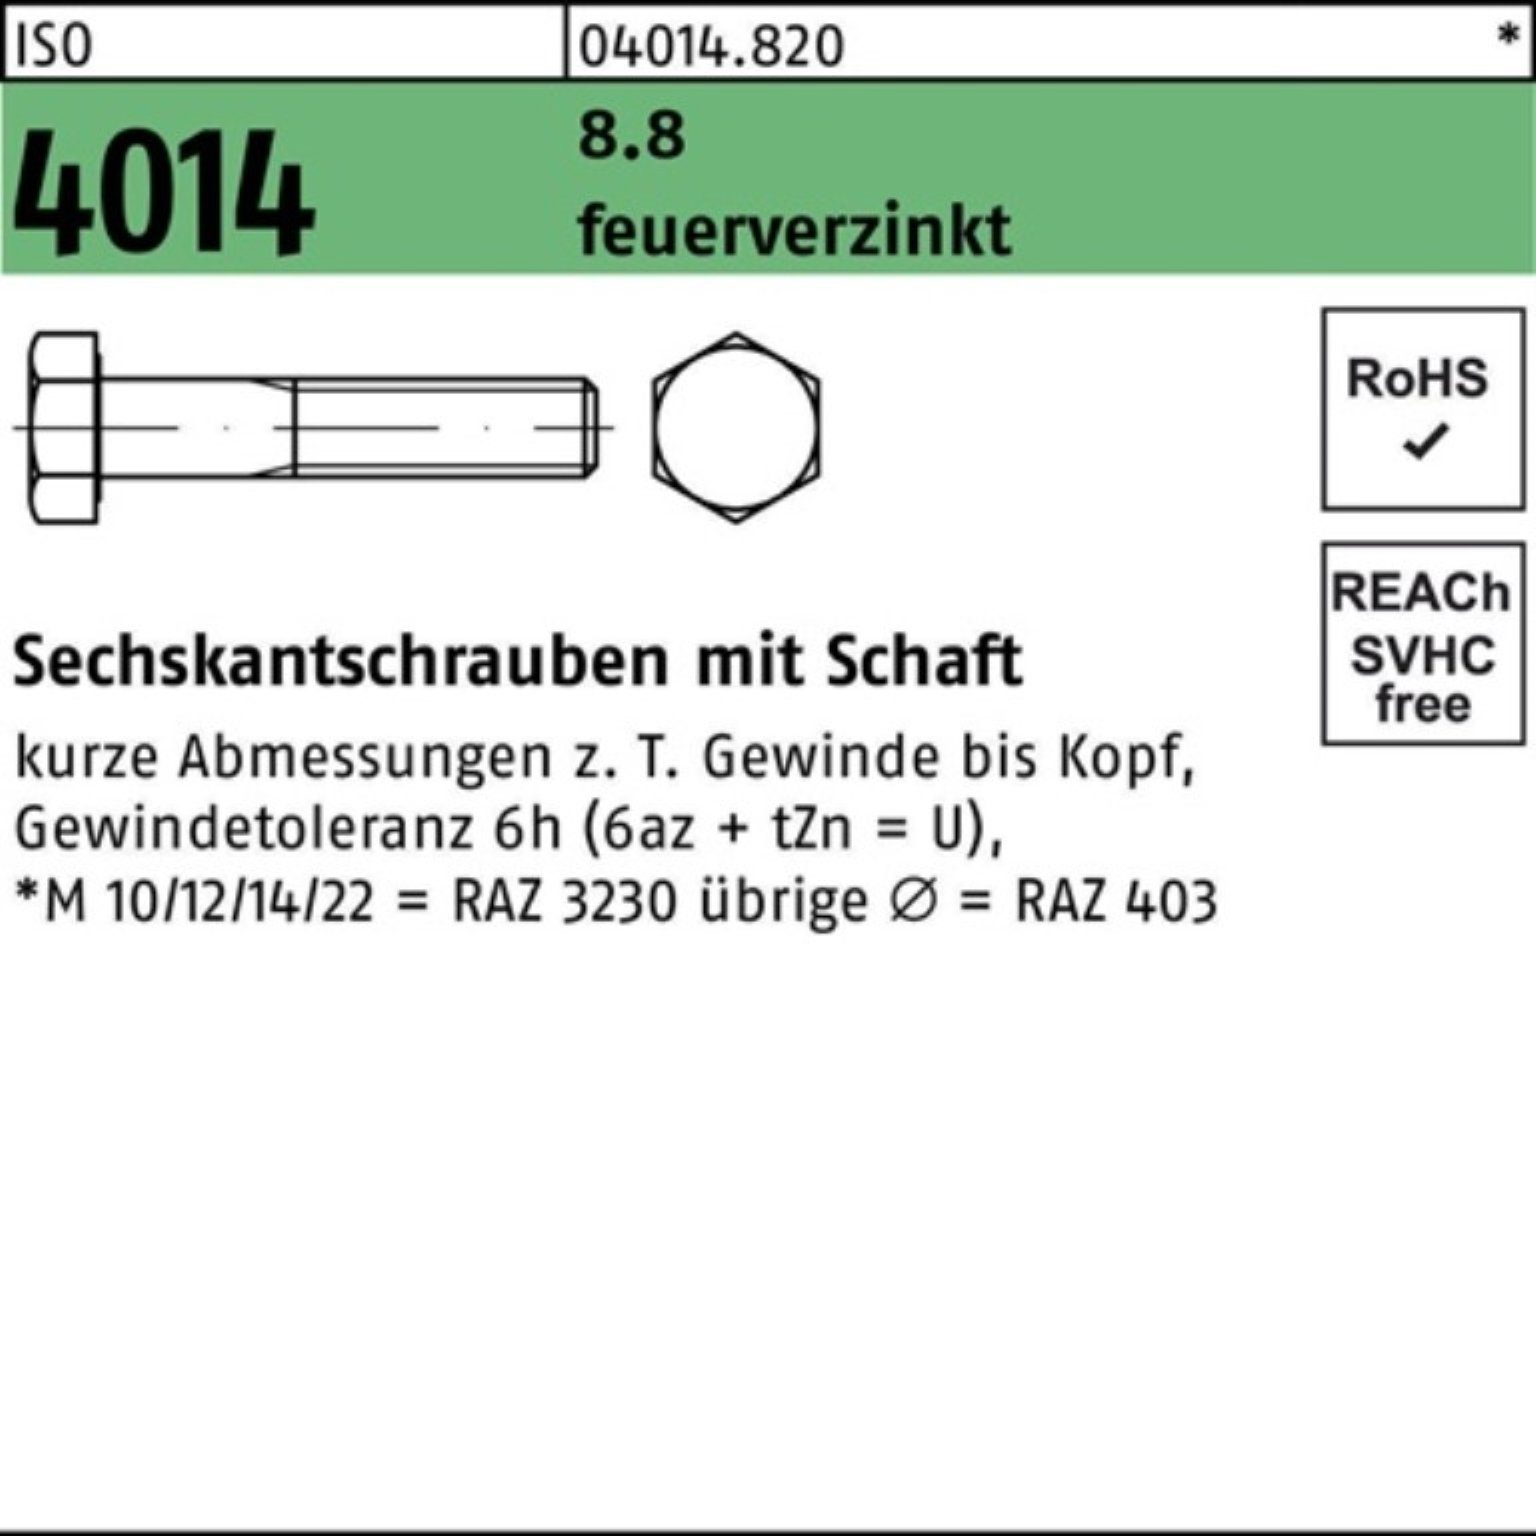 Bufab Sechskantschraube 100er Pack Sechskantschraube ISO 4014 Schaft M24x 80 8.8 feuerverz. 25